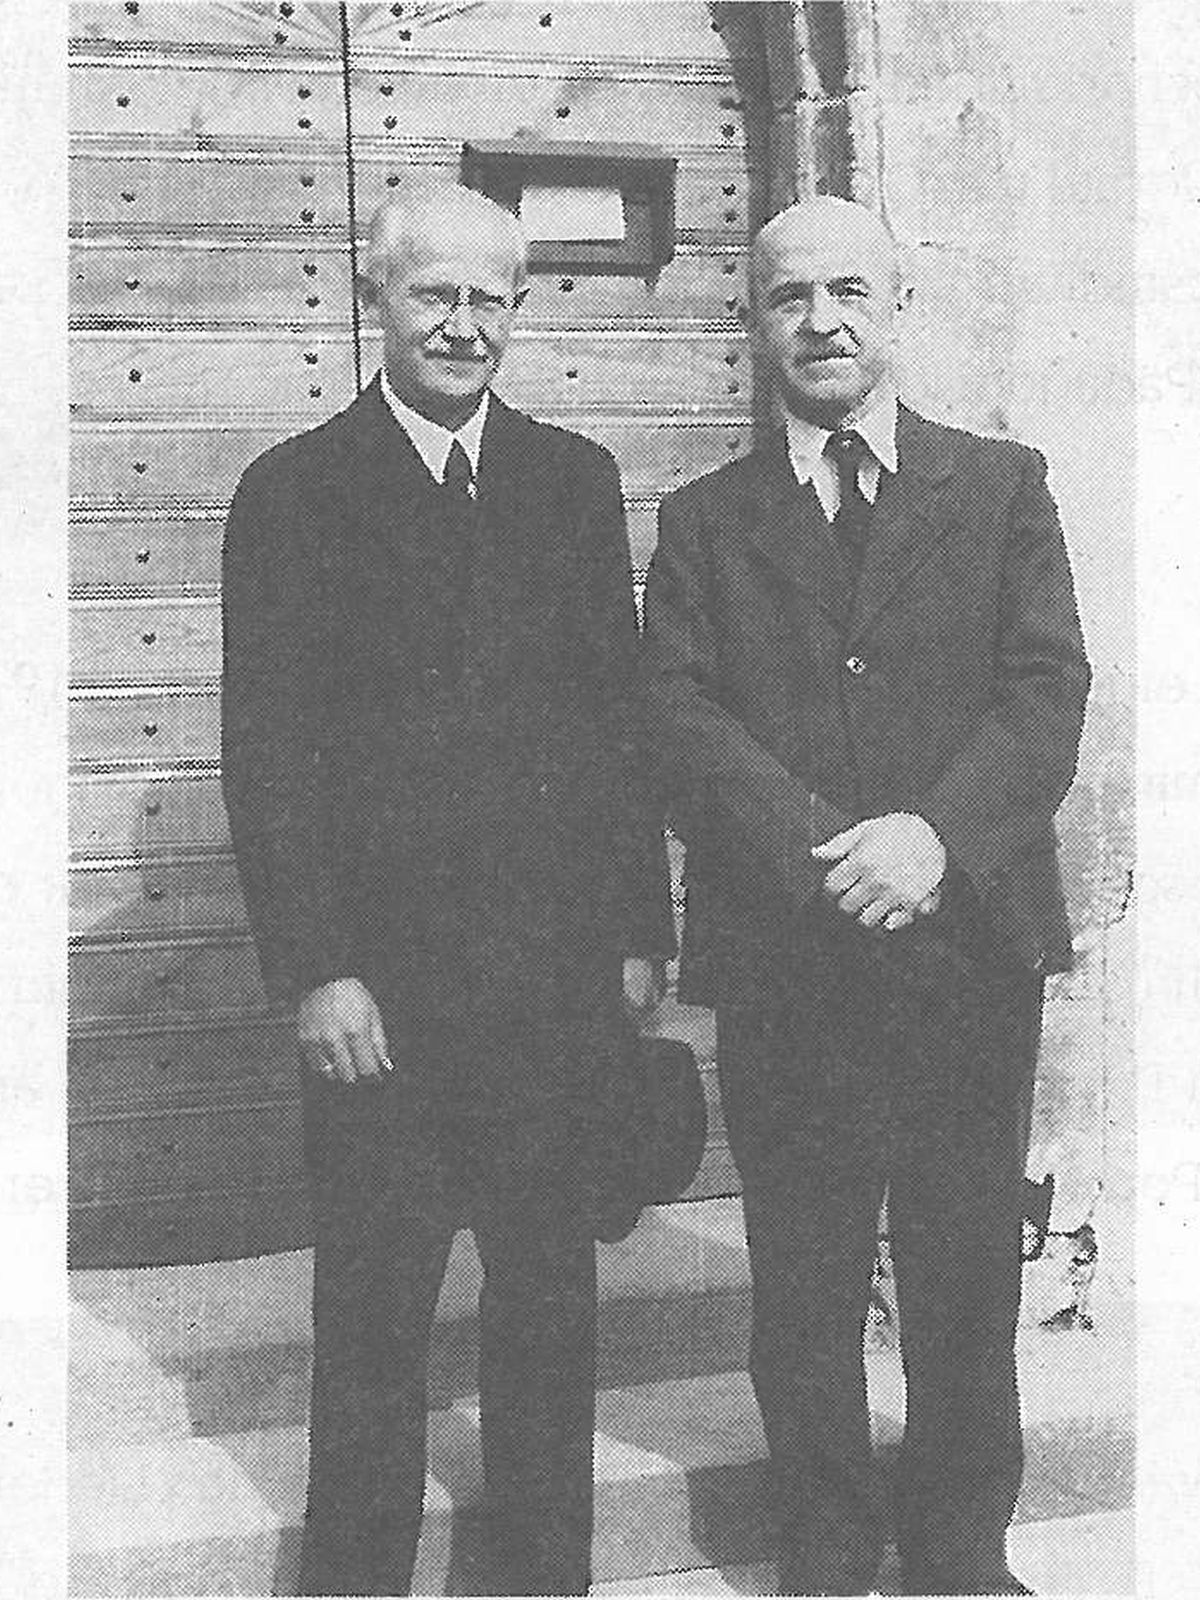  Schopflocher Skizzen Pfarrer August Birk u. Bürgermeister Otto Schwarz vor der Schopflocher Kirchentüre (1947) - Bild wird mit einem Klick vergrößert 